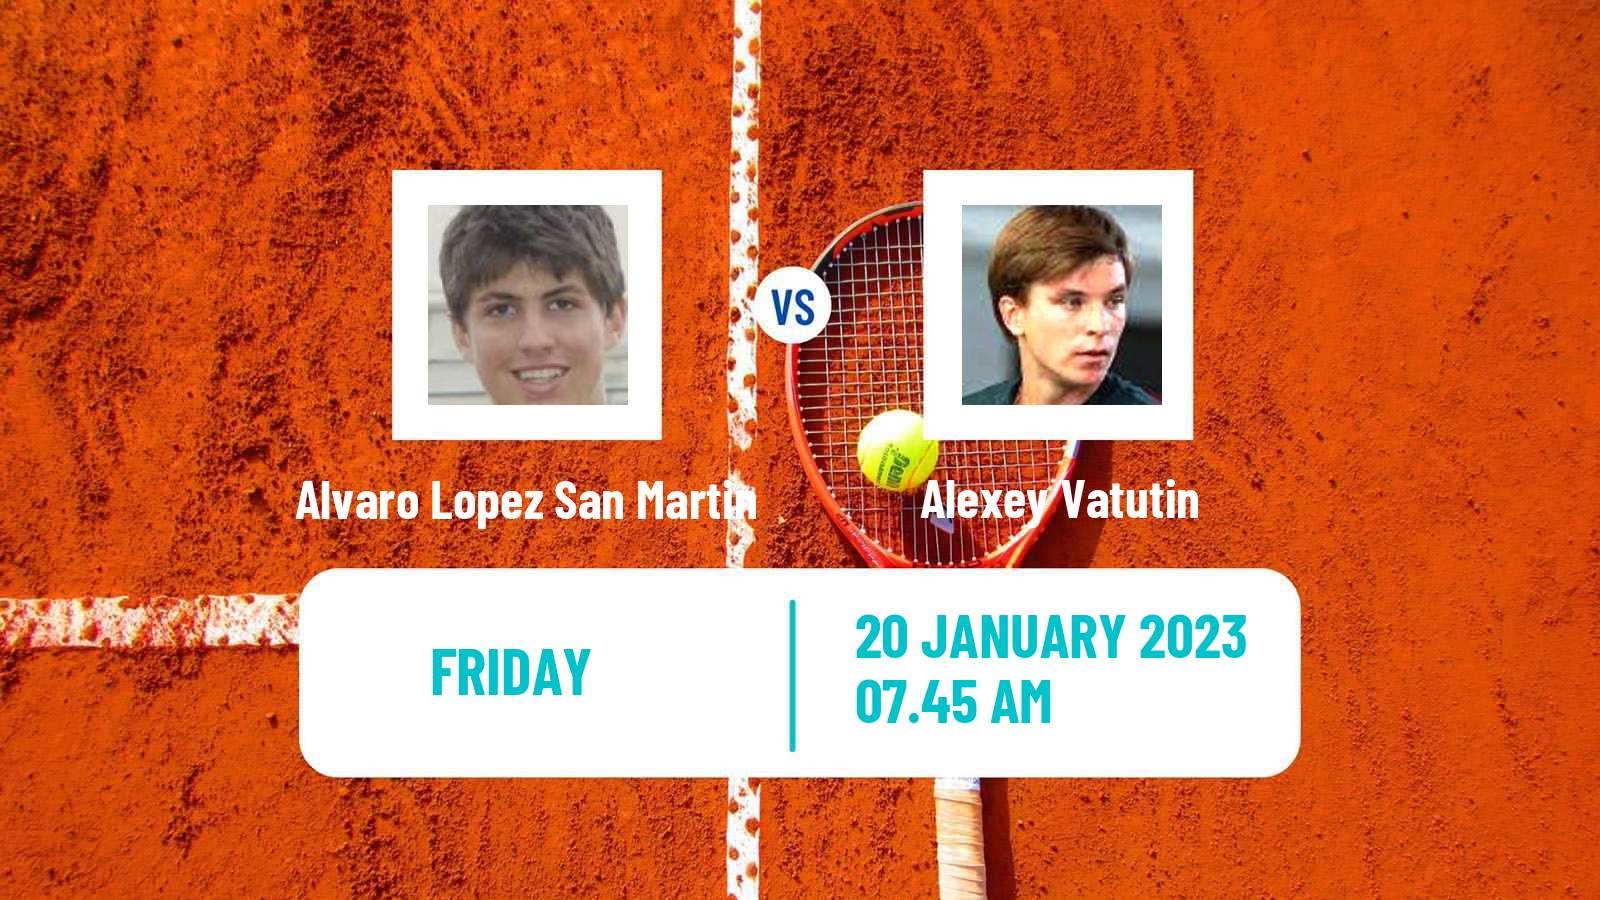 Tennis ITF Tournaments Alvaro Lopez San Martin - Alexey Vatutin